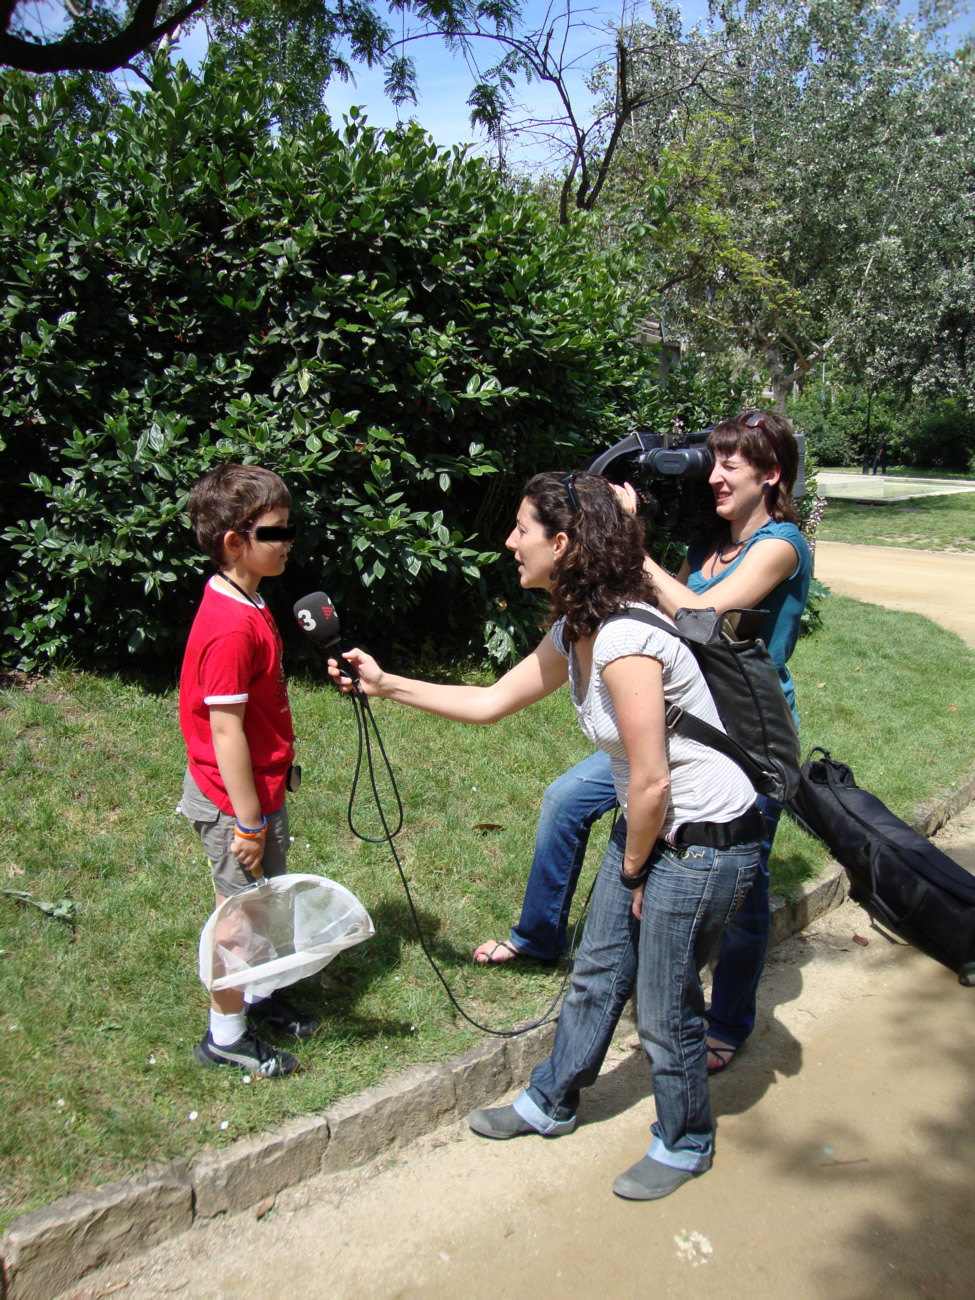 Bioblitz Parc de la Ciutadella, BCN. 13.06.10, TV3 entrevistando a uno de los nios participantes